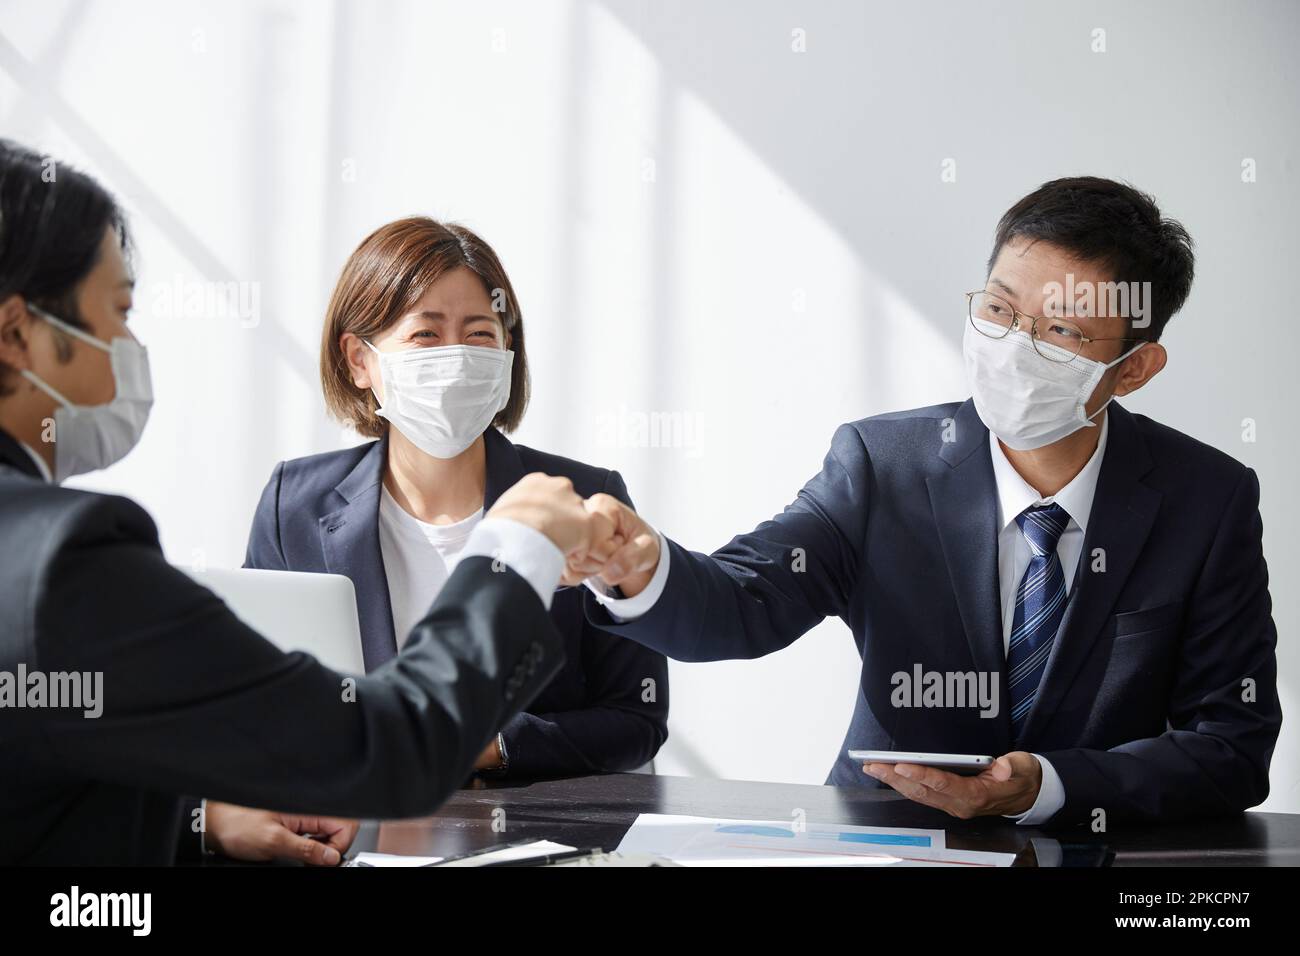 Employé de bureau avec un masque dans son bureau Banque D'Images